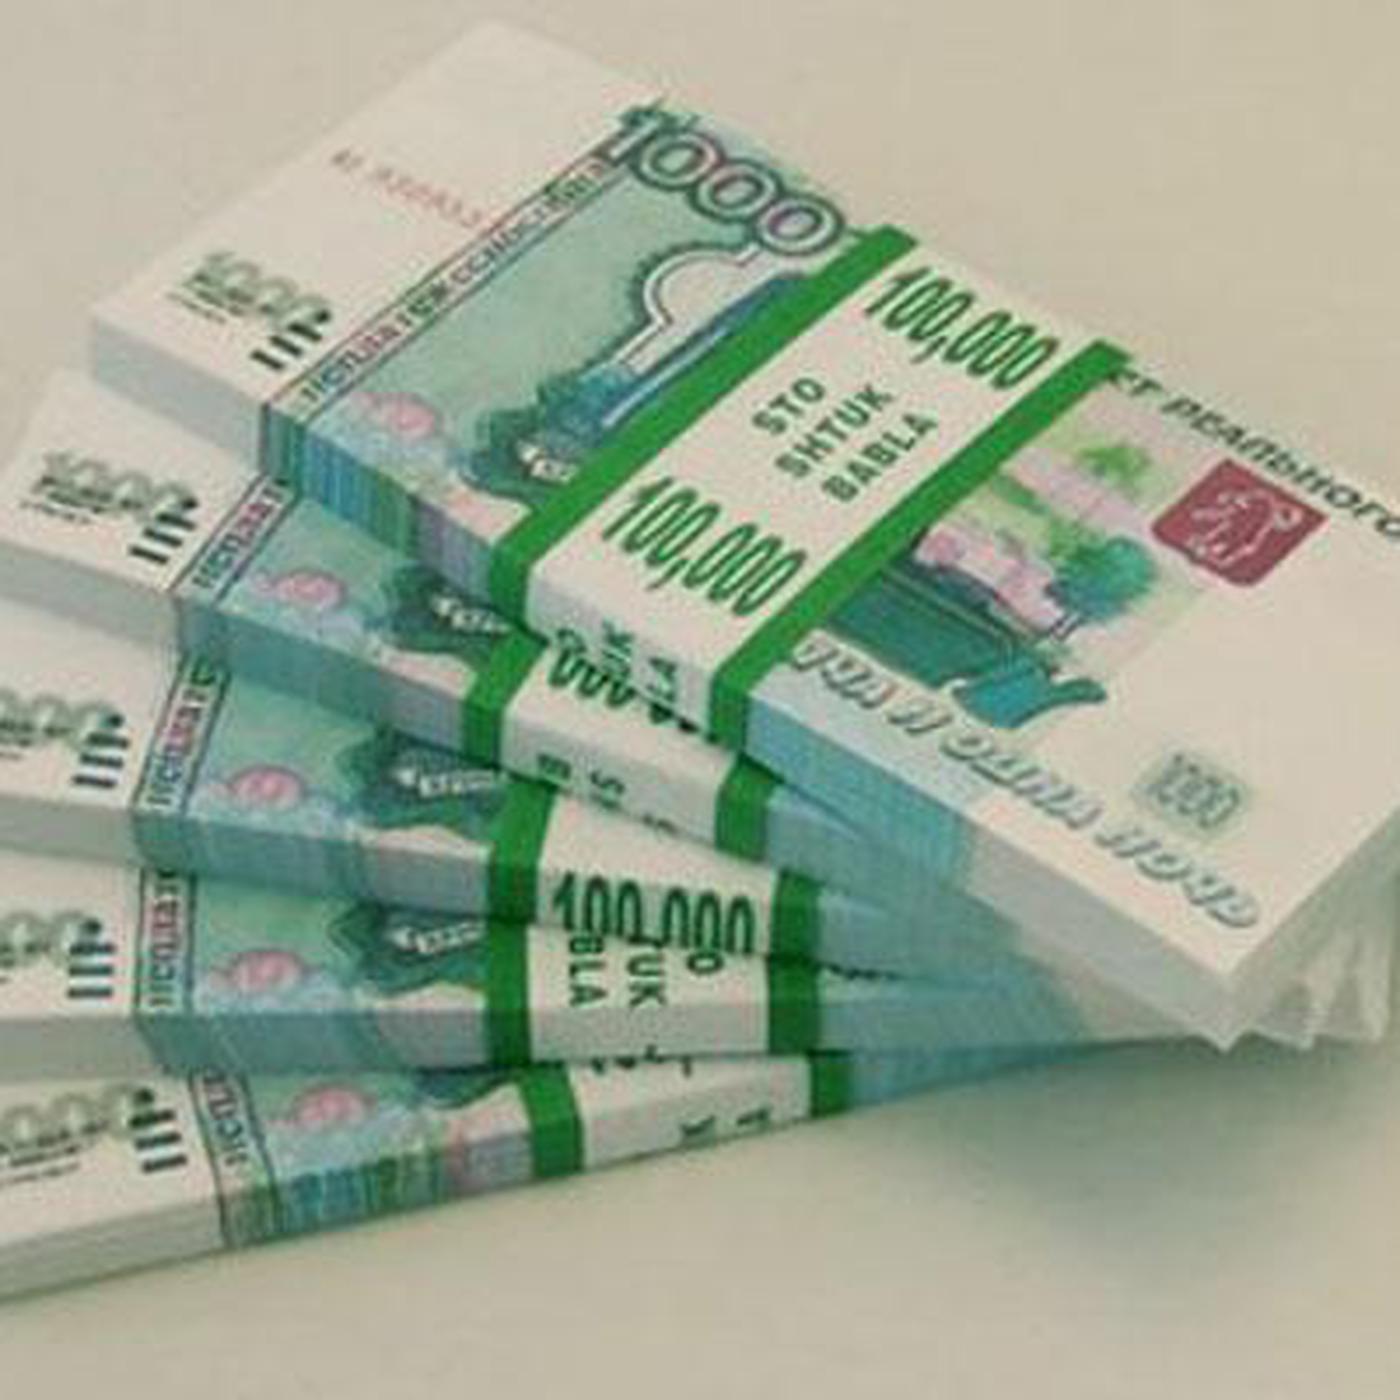 Прибыль 500 000 рублей